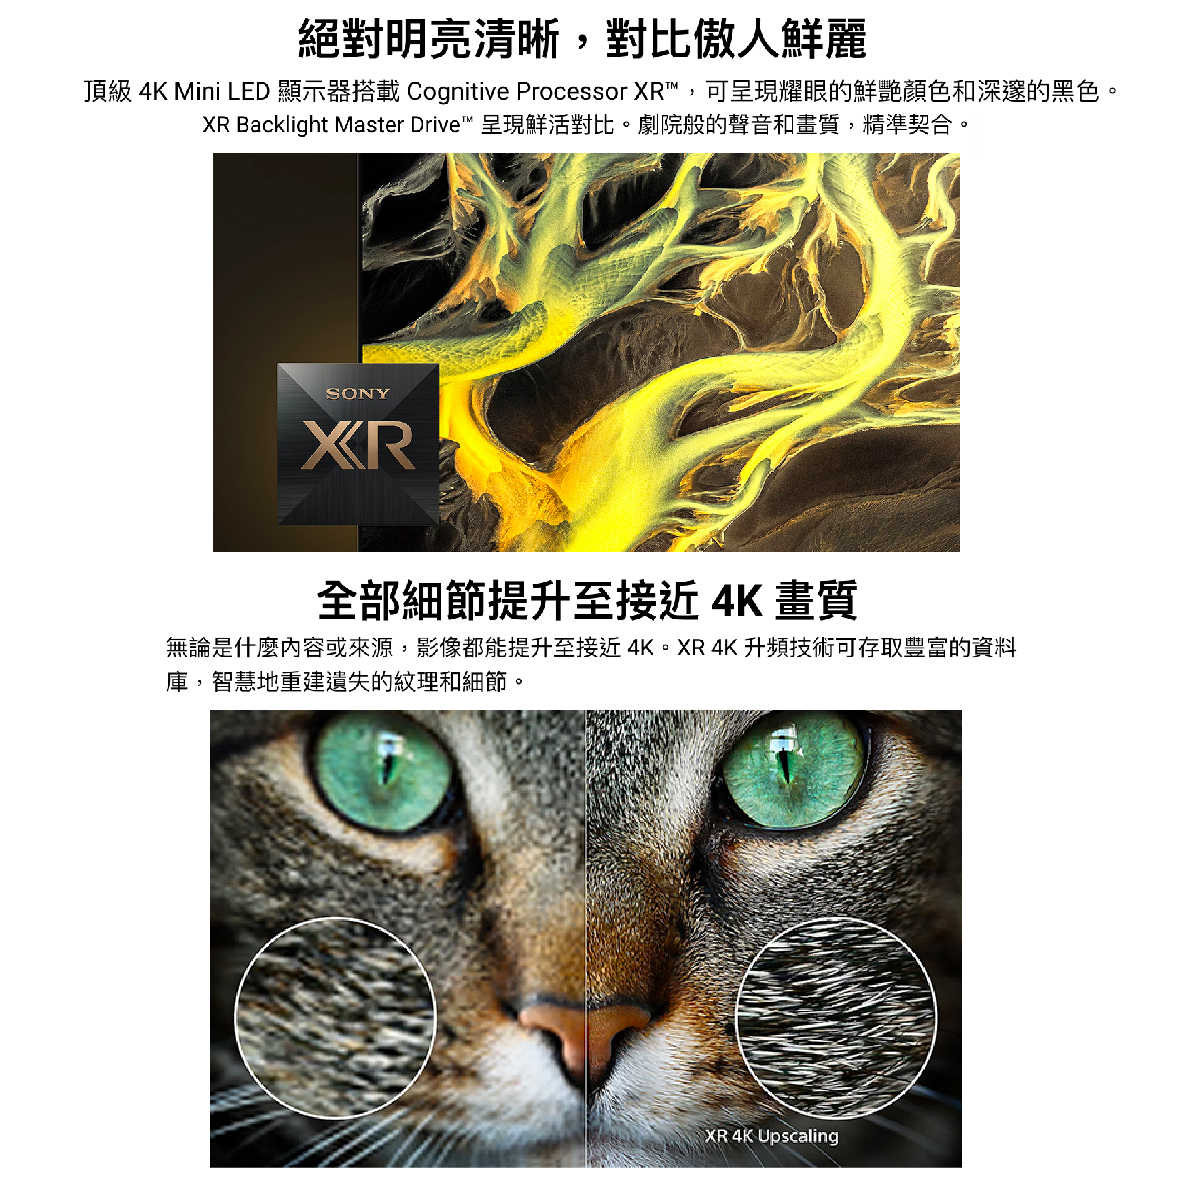 SONY 索尼 XRM-65X95L 65吋 4K HDR LCD 直下式 LED 電視 2023 | 金曲音響